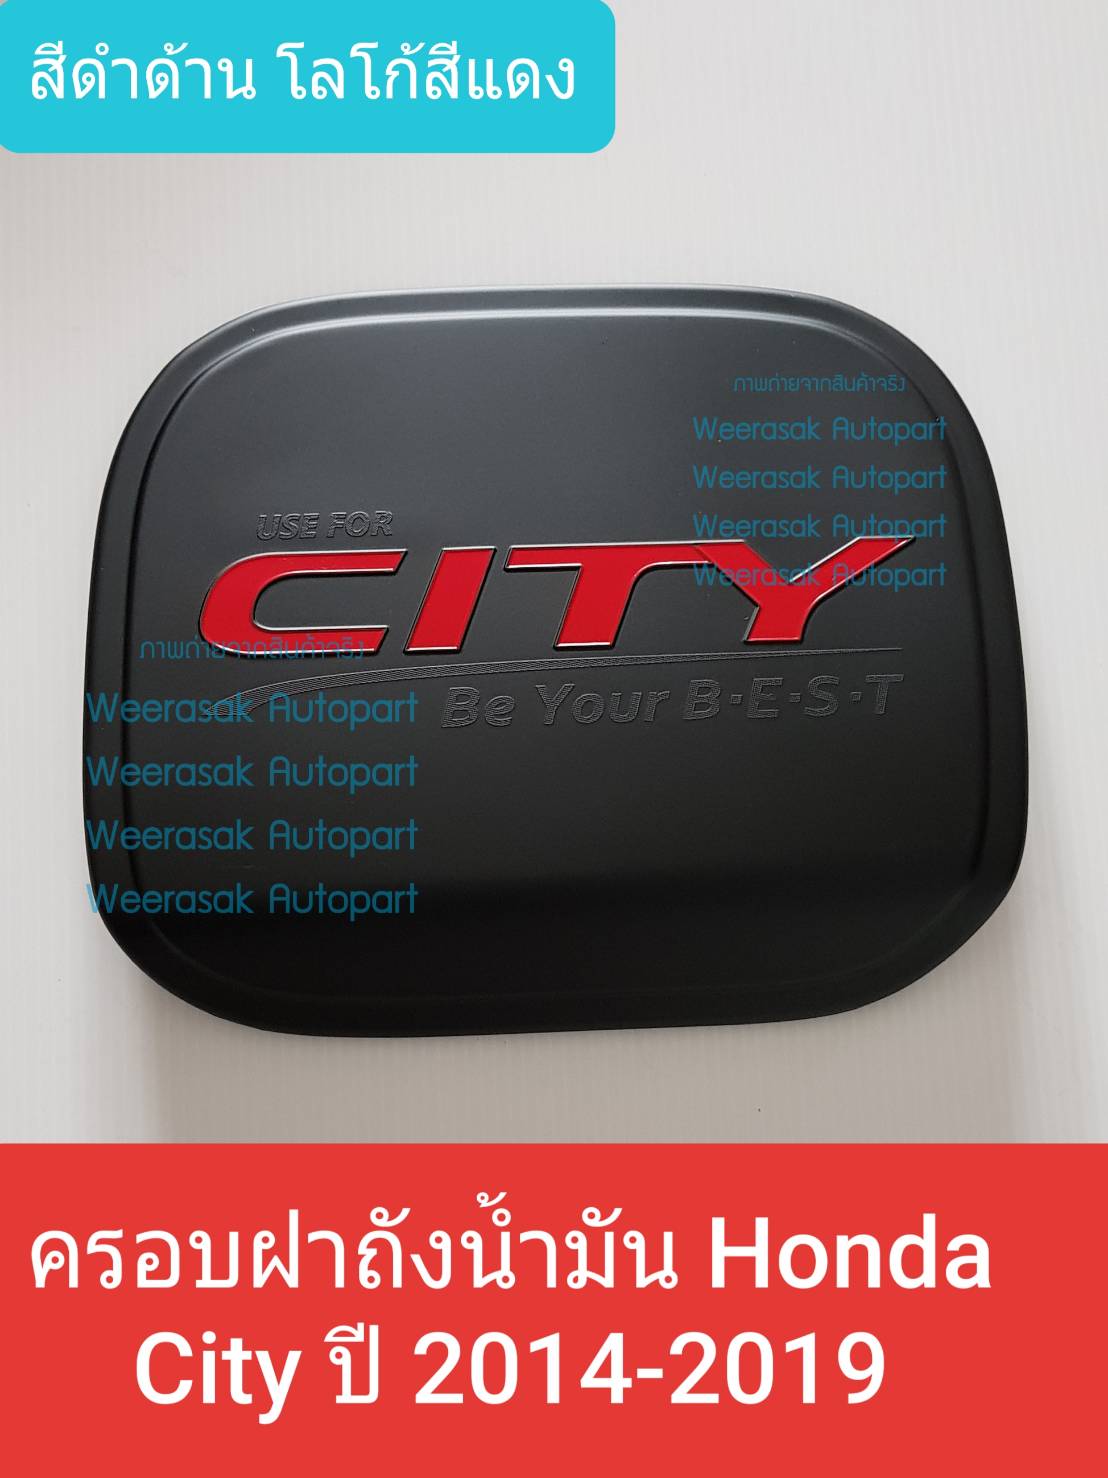 ครอบฝาถังน้ำมัน Honda City ฮอนด้า ซิตี้ ปี 2014-2019 (สีดำด้านโลโก้สีแดง) (ใช้เทปกาว 3M มีแปะให้ด้านหลัง)